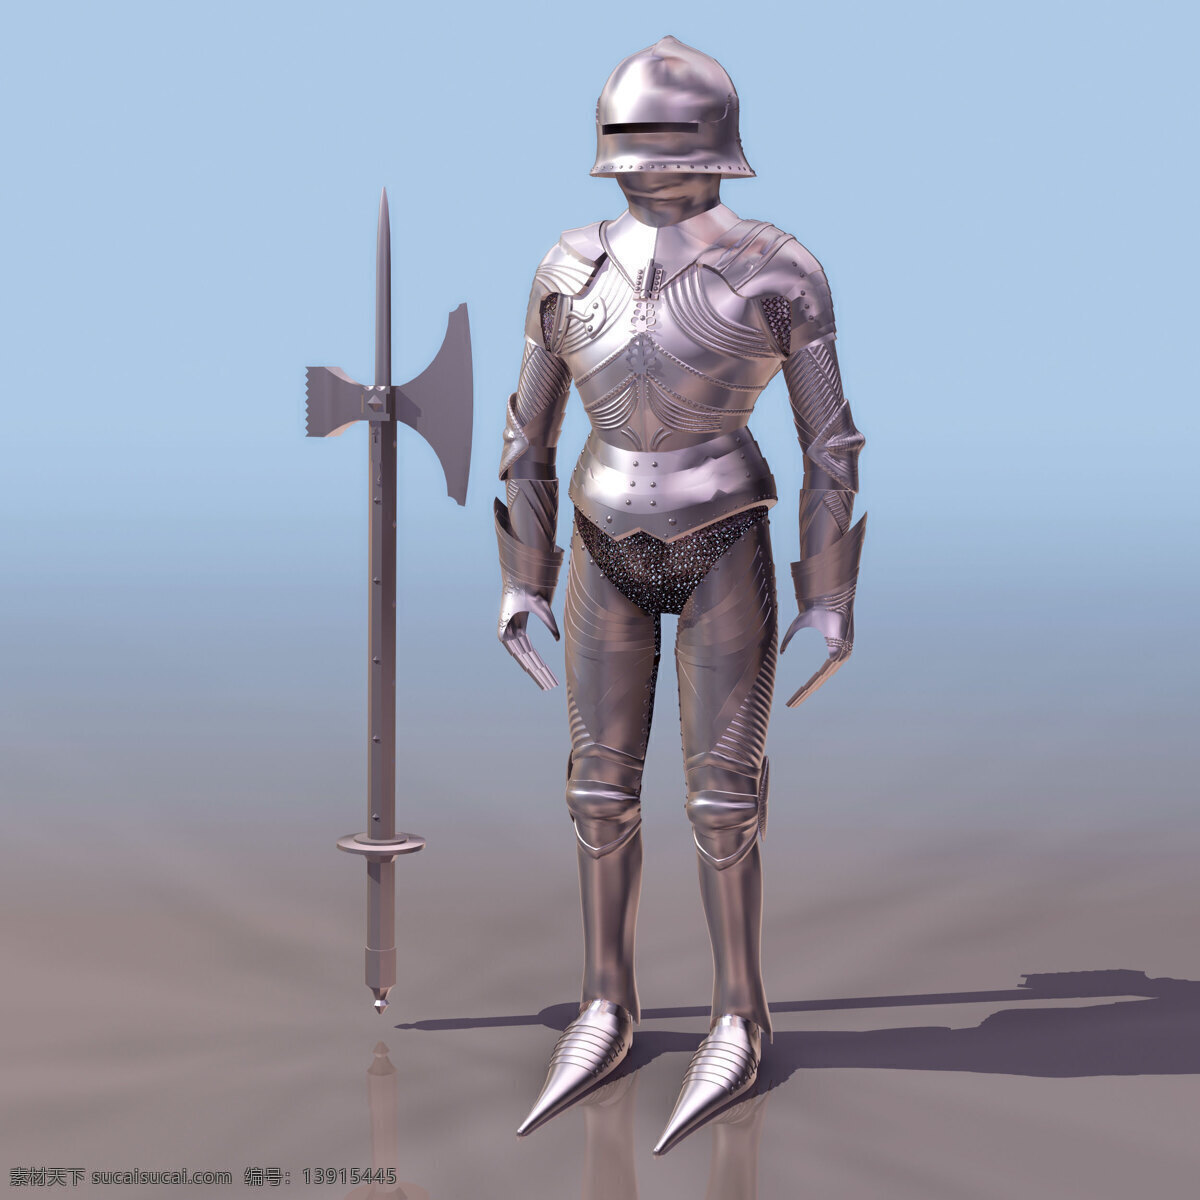 盔甲 战士 模型 erzher 机器人 盔甲战士模型 人物角色 3d模型素材 动植物模型